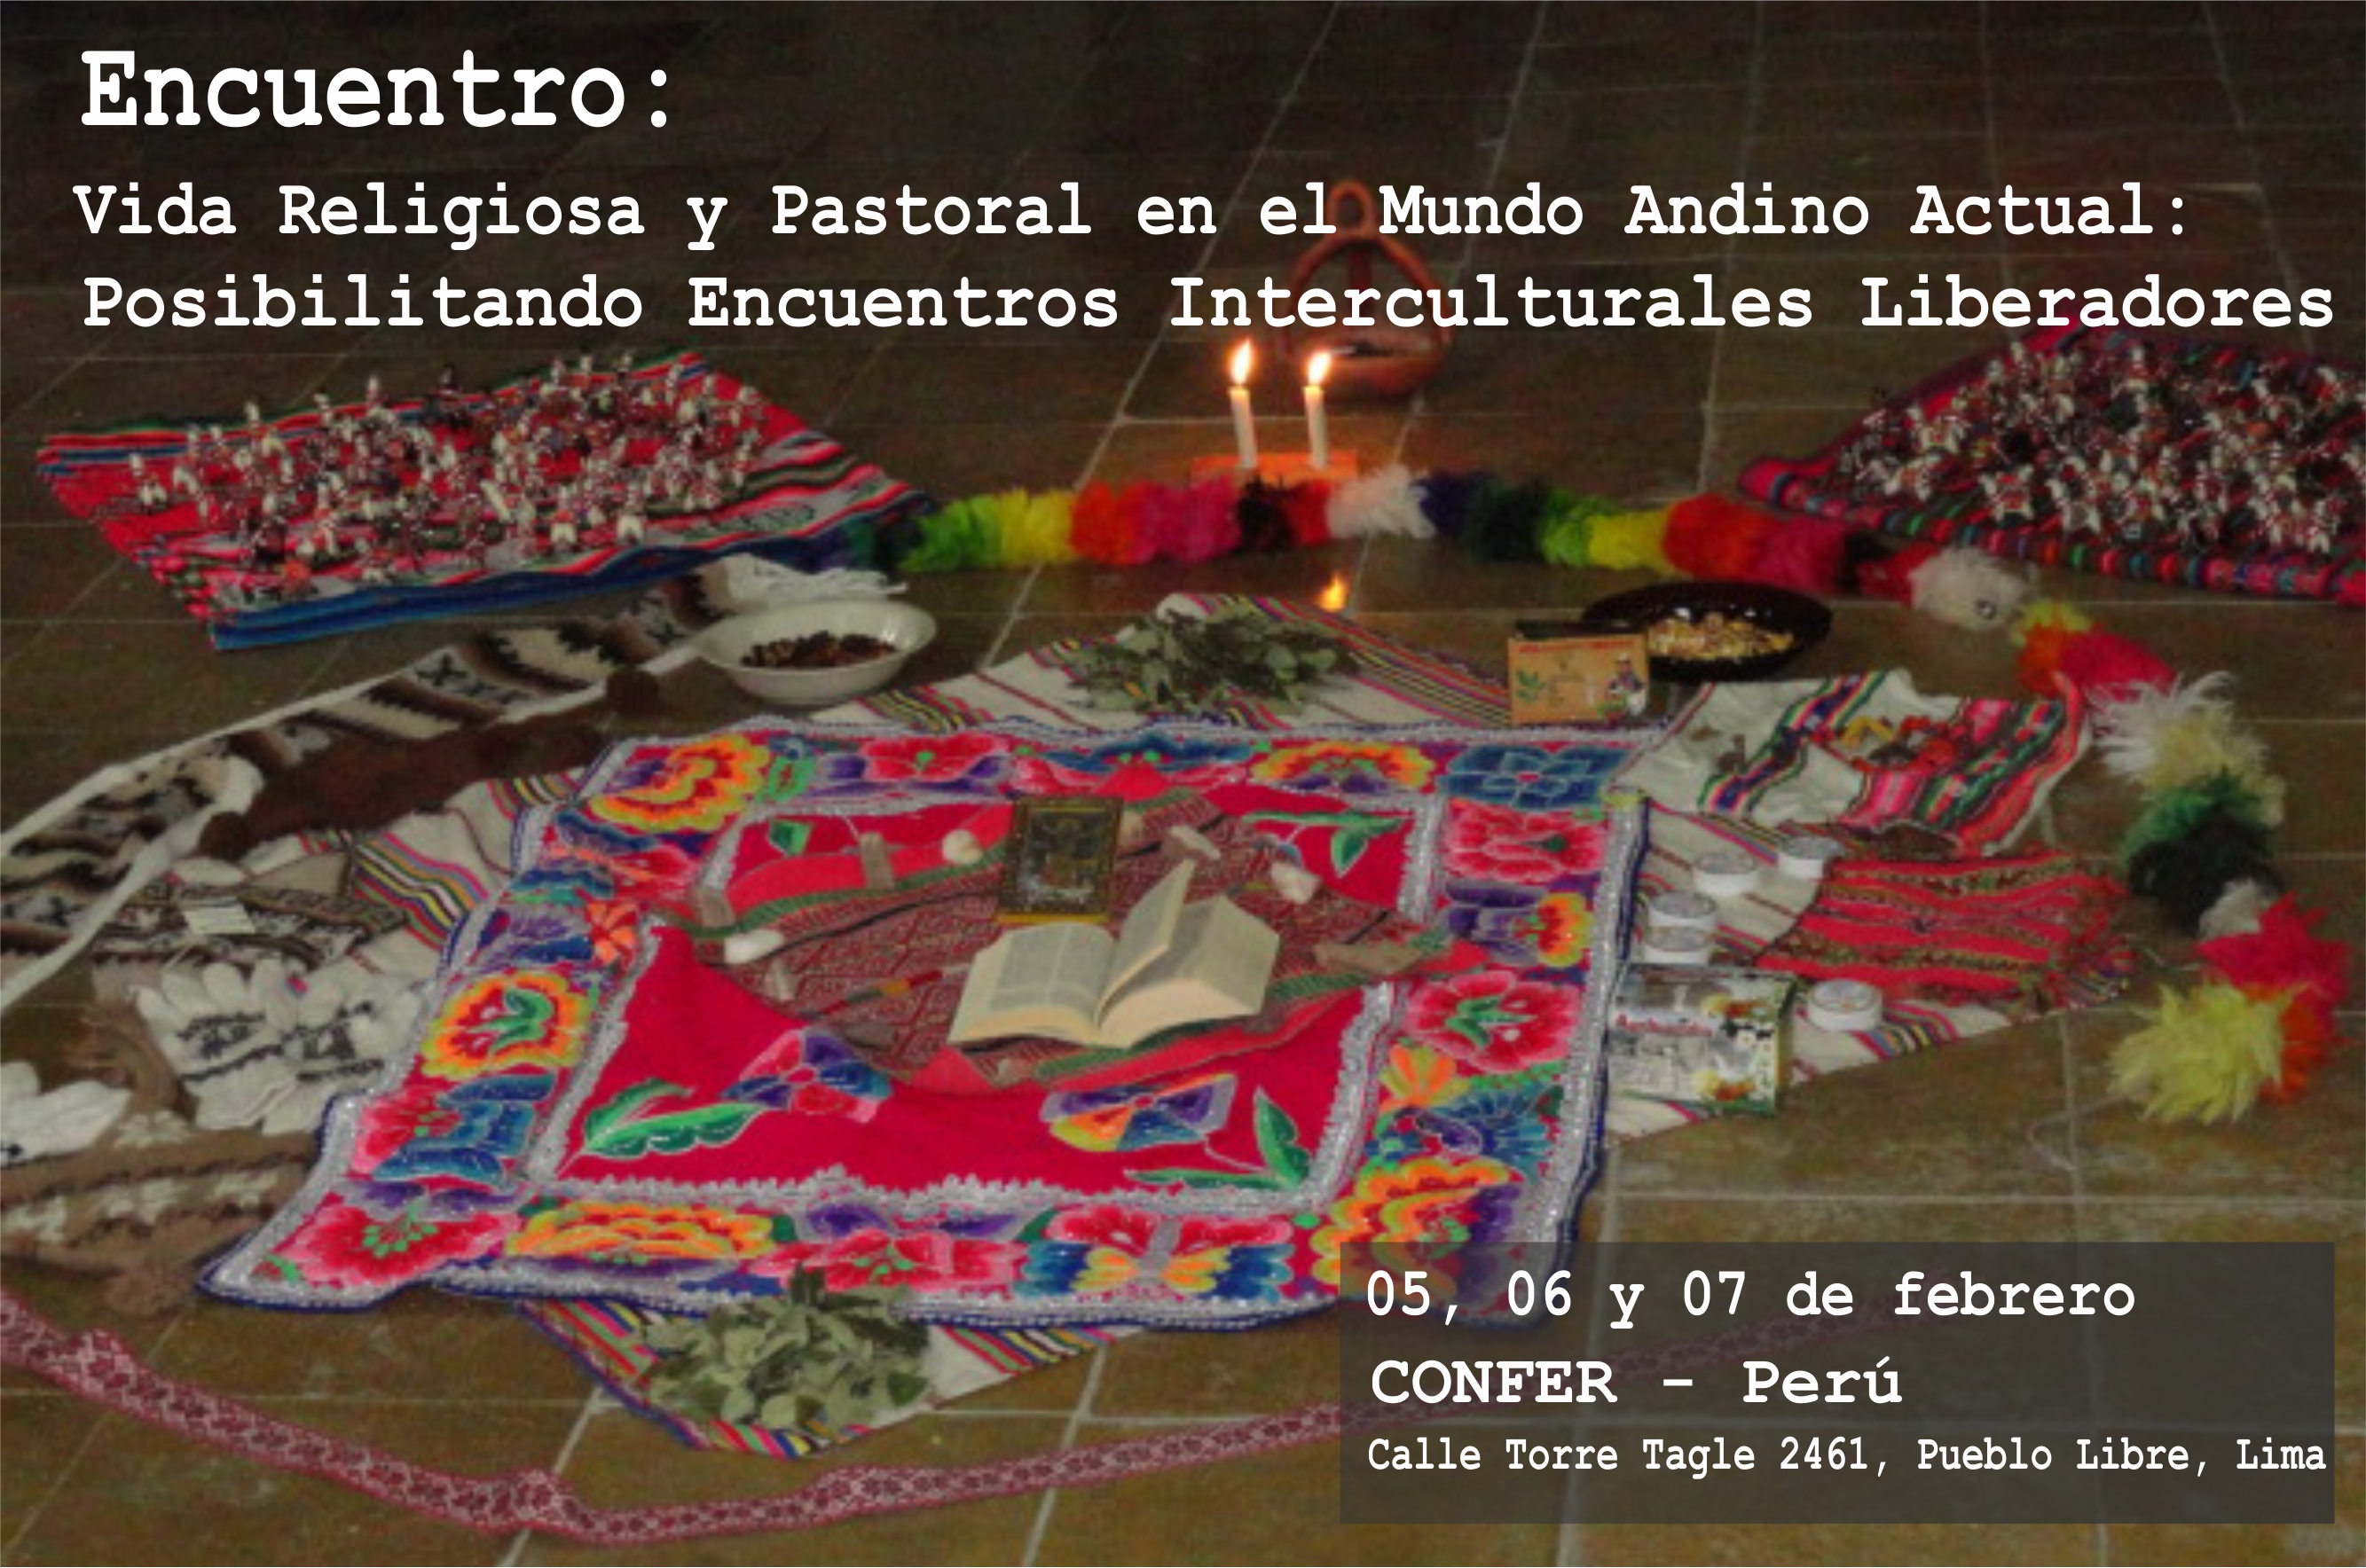 Encuentro: Vida Religiosa y Pastoral en el Mundo Andino Actual - Posibilitando Encuentros Interculturales Liberadores